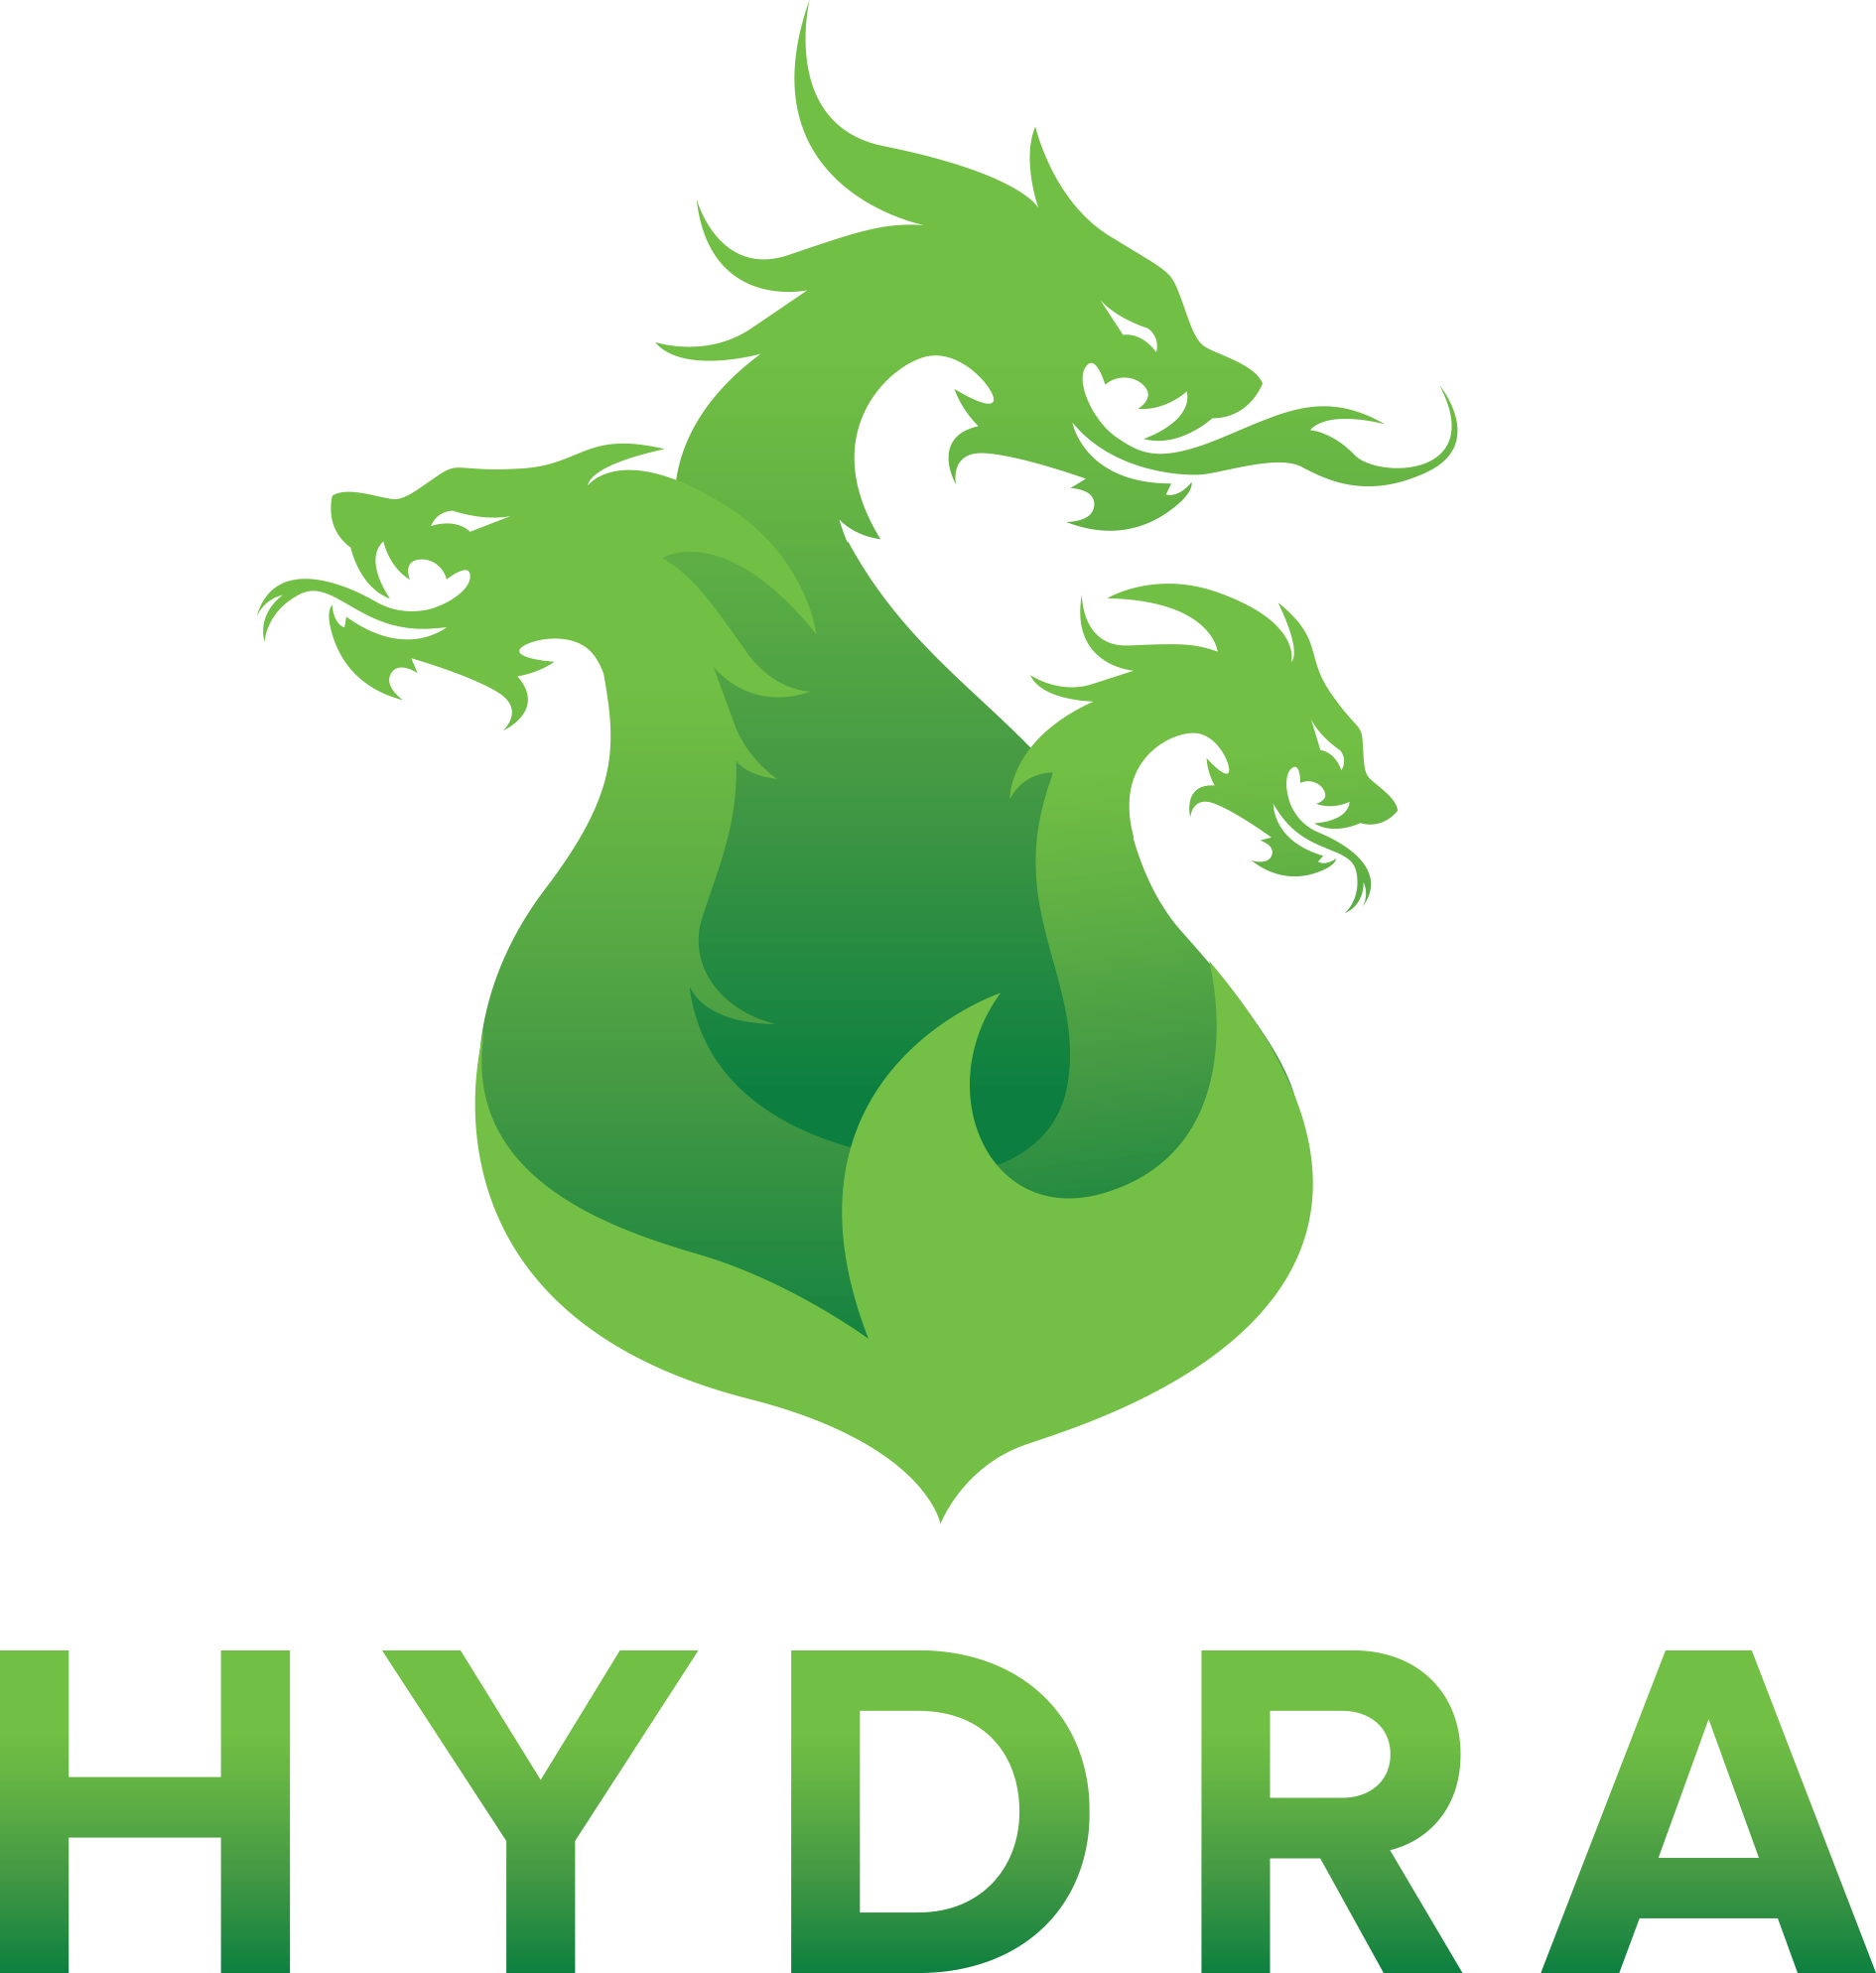 Hydra onion wiki hydra ссылки на гидру в торе официальные